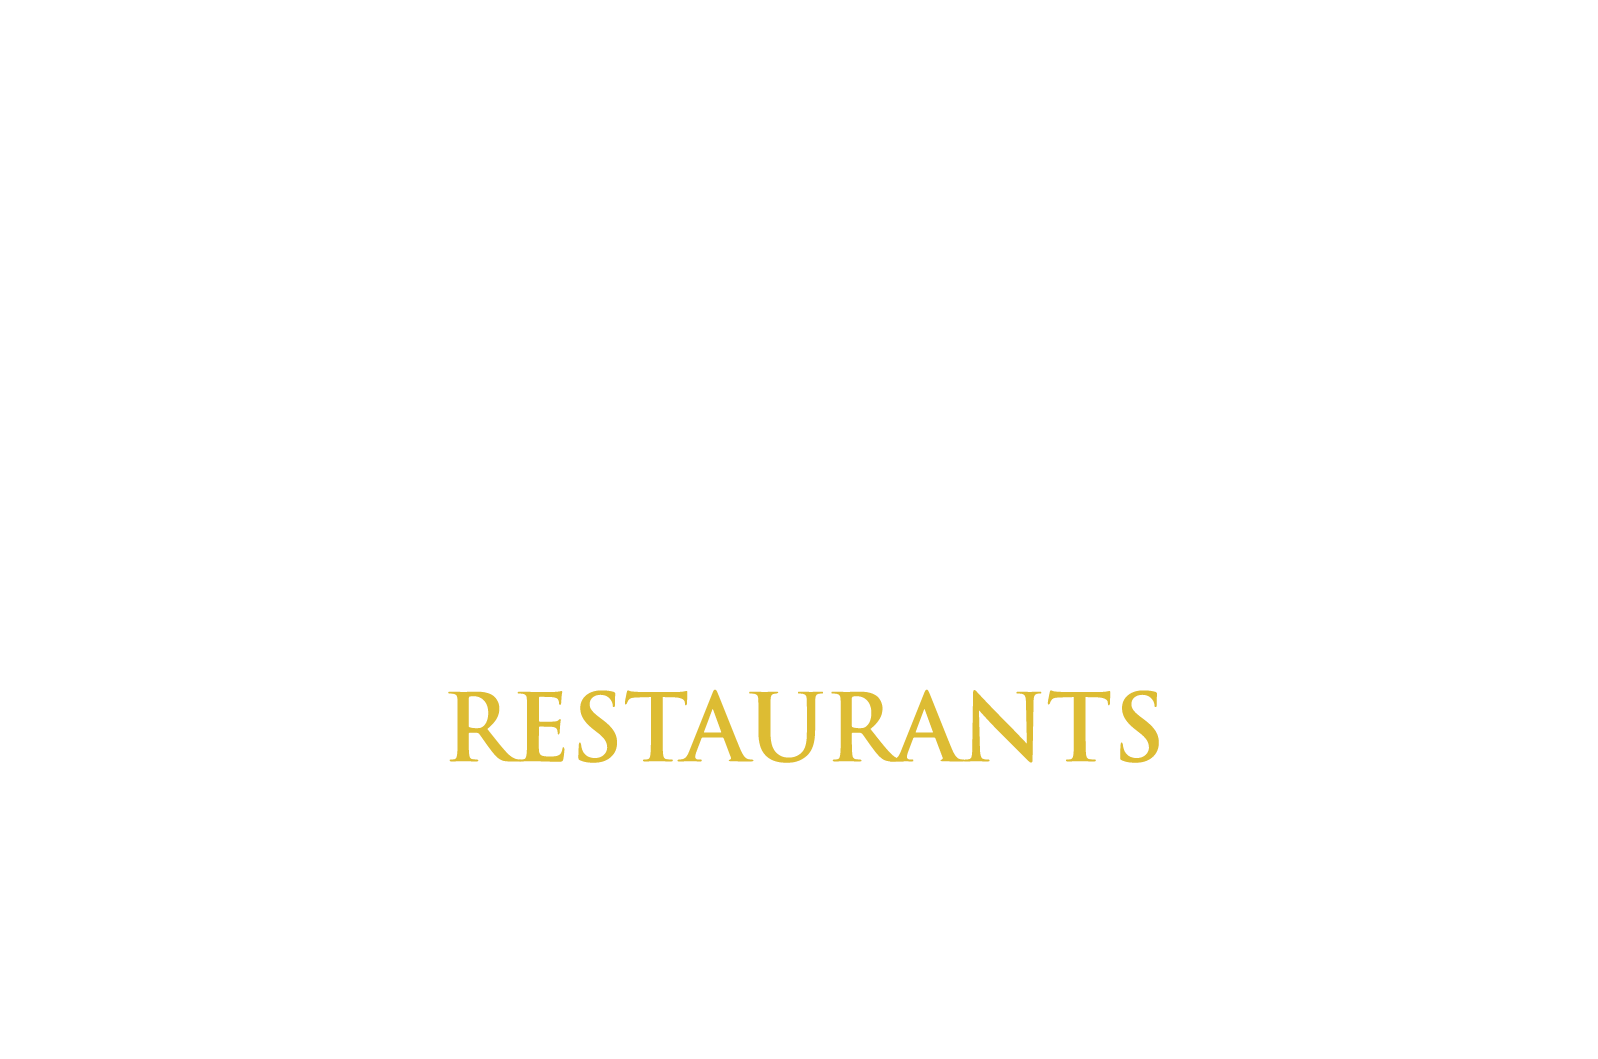 Perry's Restaurants